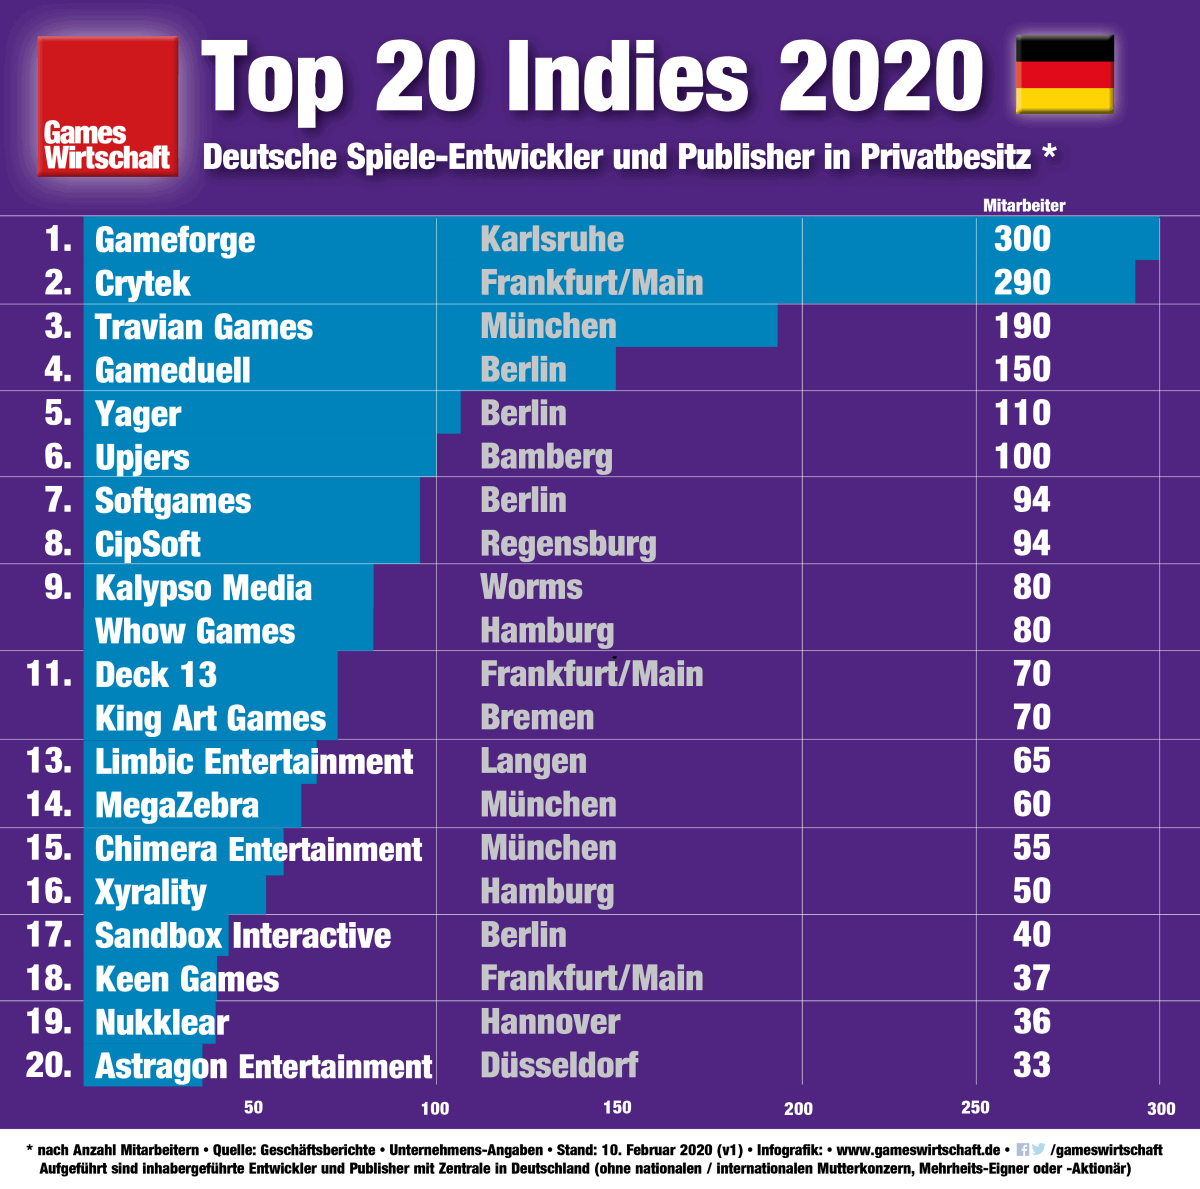 Top 20 Indies 2020: Die größten Games-Entwickler in Privatbesitz (Stand: 11.2.2020)